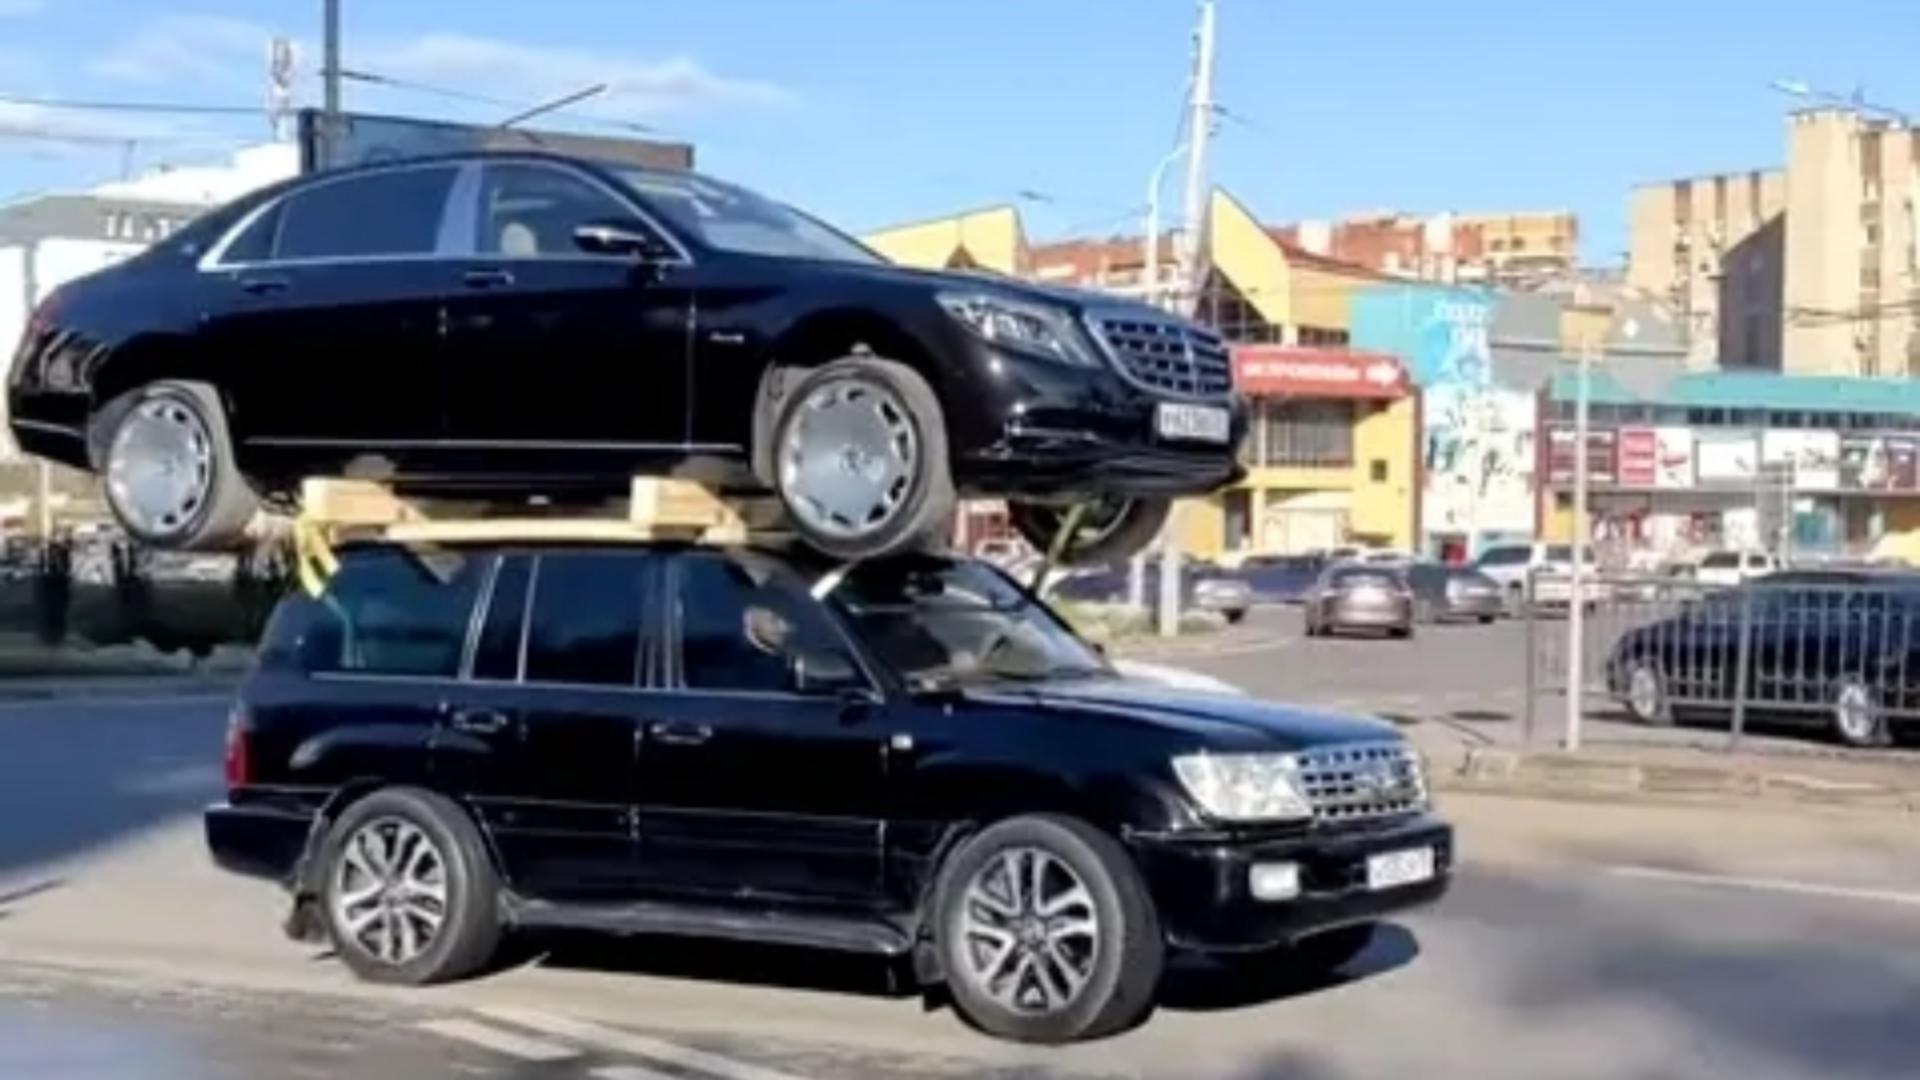 Videoclipul care a uimit internetul: O Toyota se transformă în cărăuș de lux și transportă un Maybach pe acoperiș